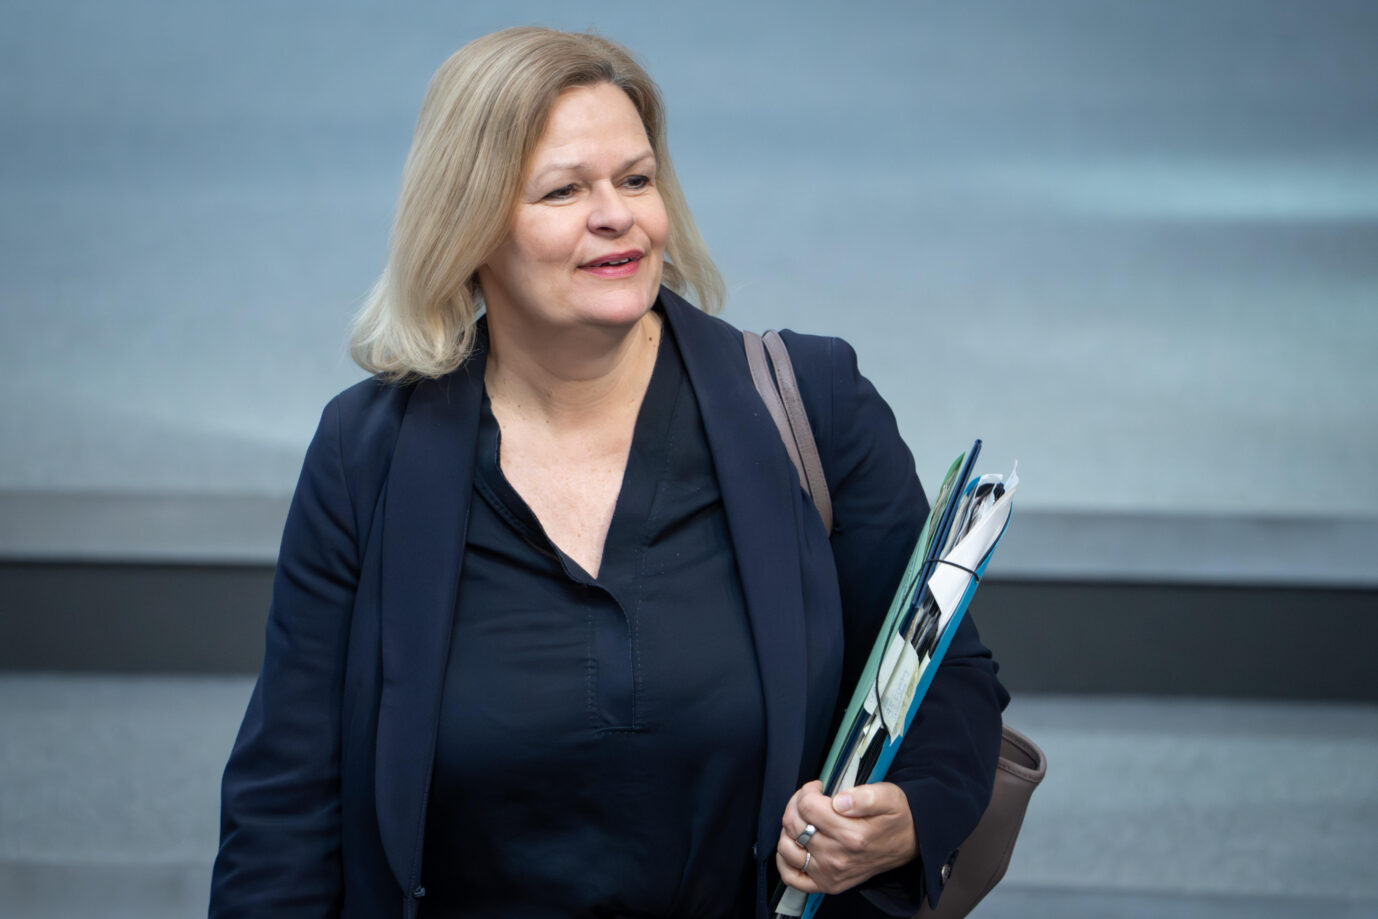 Innenminsterin Nancy Faeser (SPD) steht aufrecht und hält einen Ordner mit Dokumenten in ihrem linken Arm. Sie möchte mehr Diversität in öffentlichen Ämtern durchsetzen.